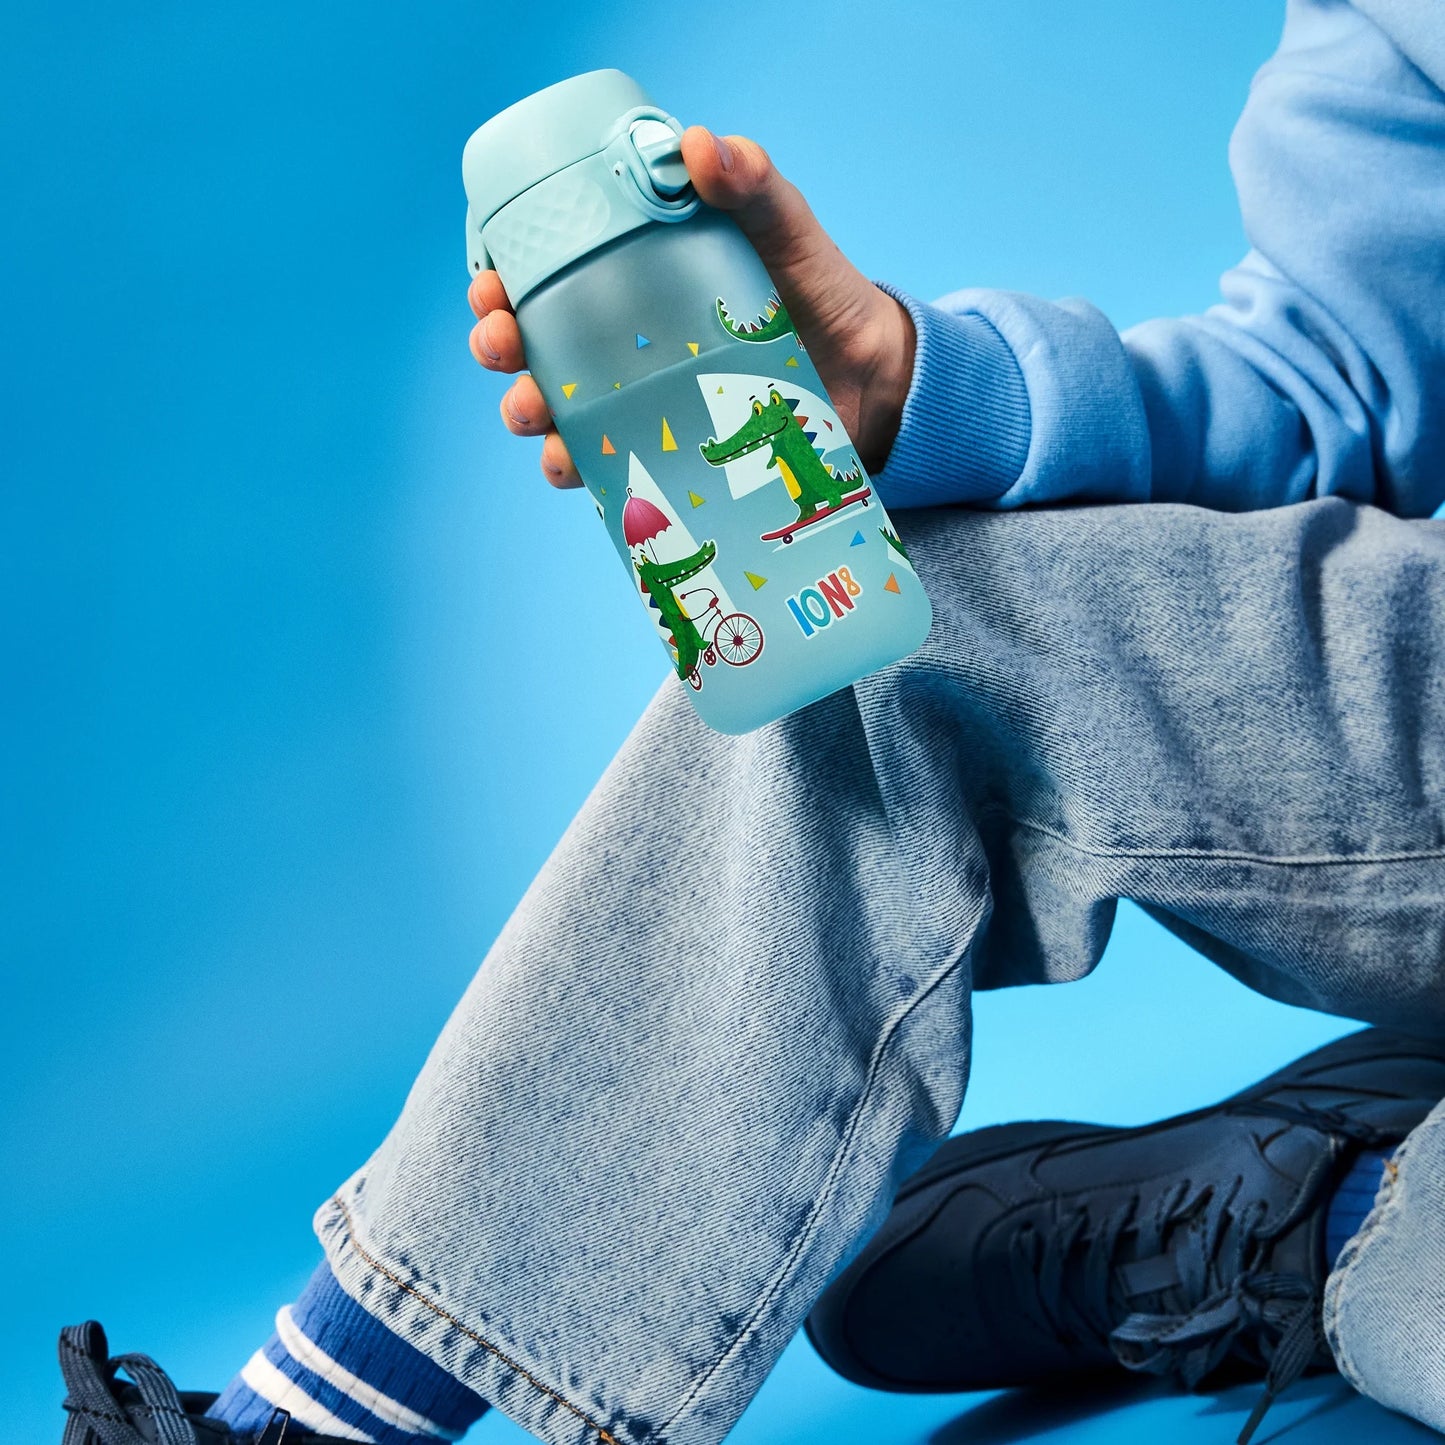 Leak Proof Kids Water Bottle, Recyclon™, Crocodiles, 350ml (12oz)